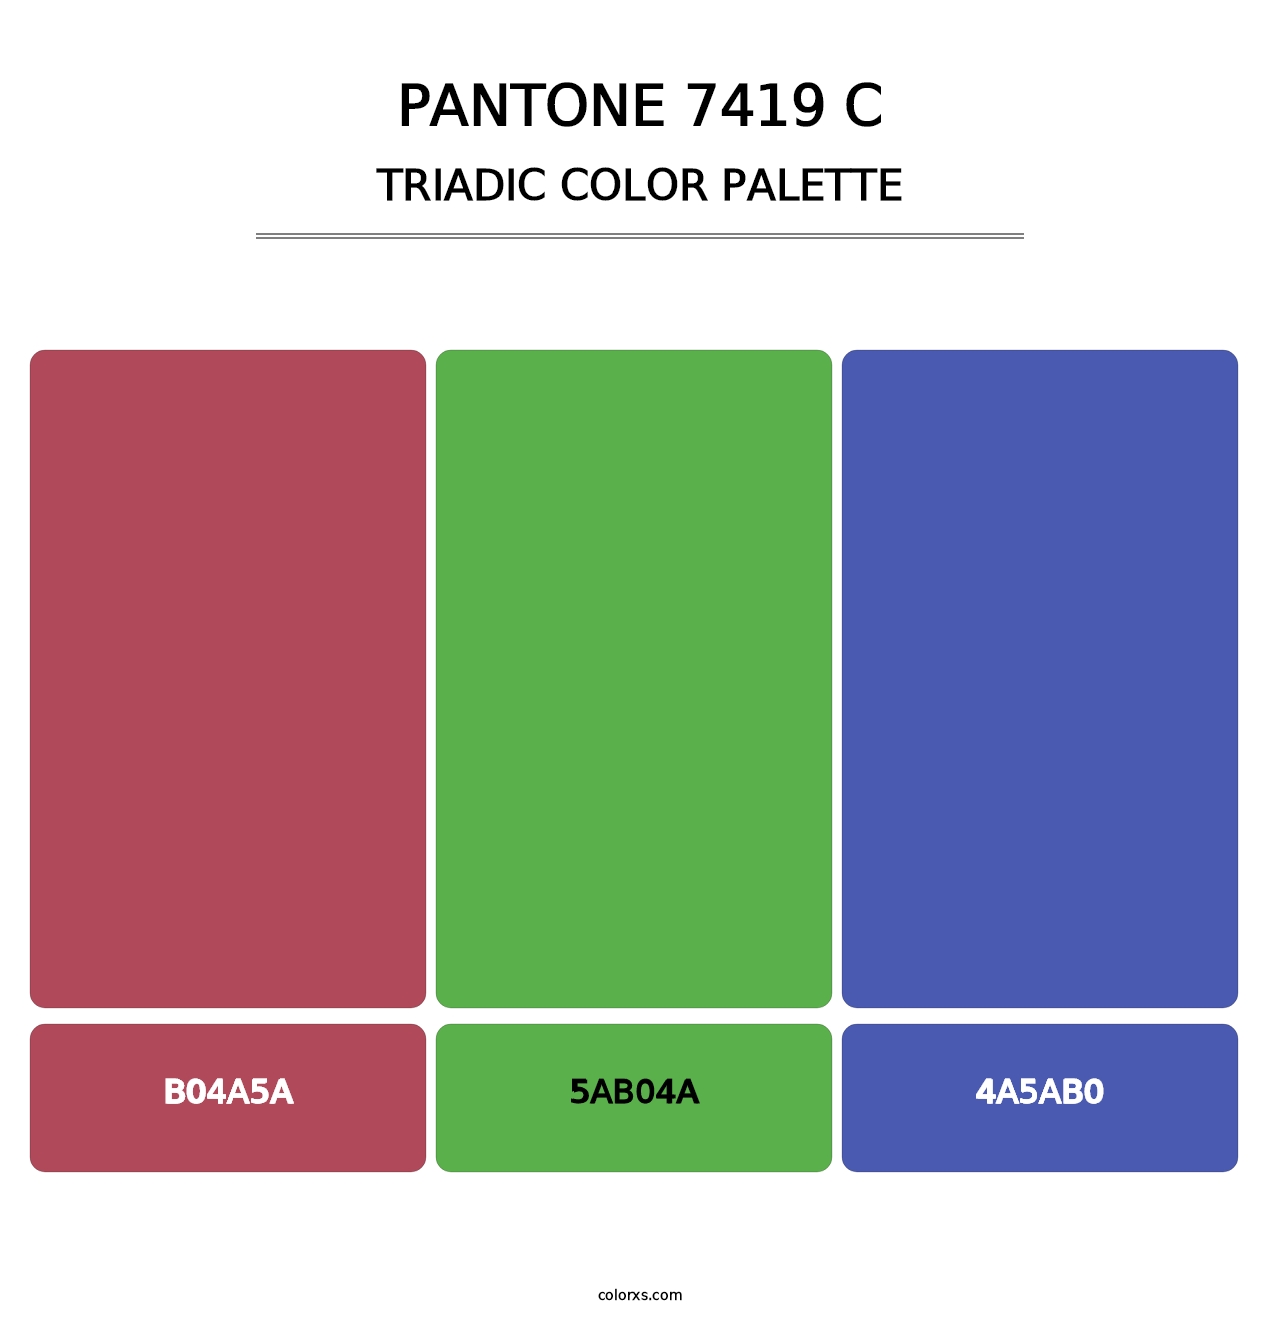 PANTONE 7419 C - Triadic Color Palette